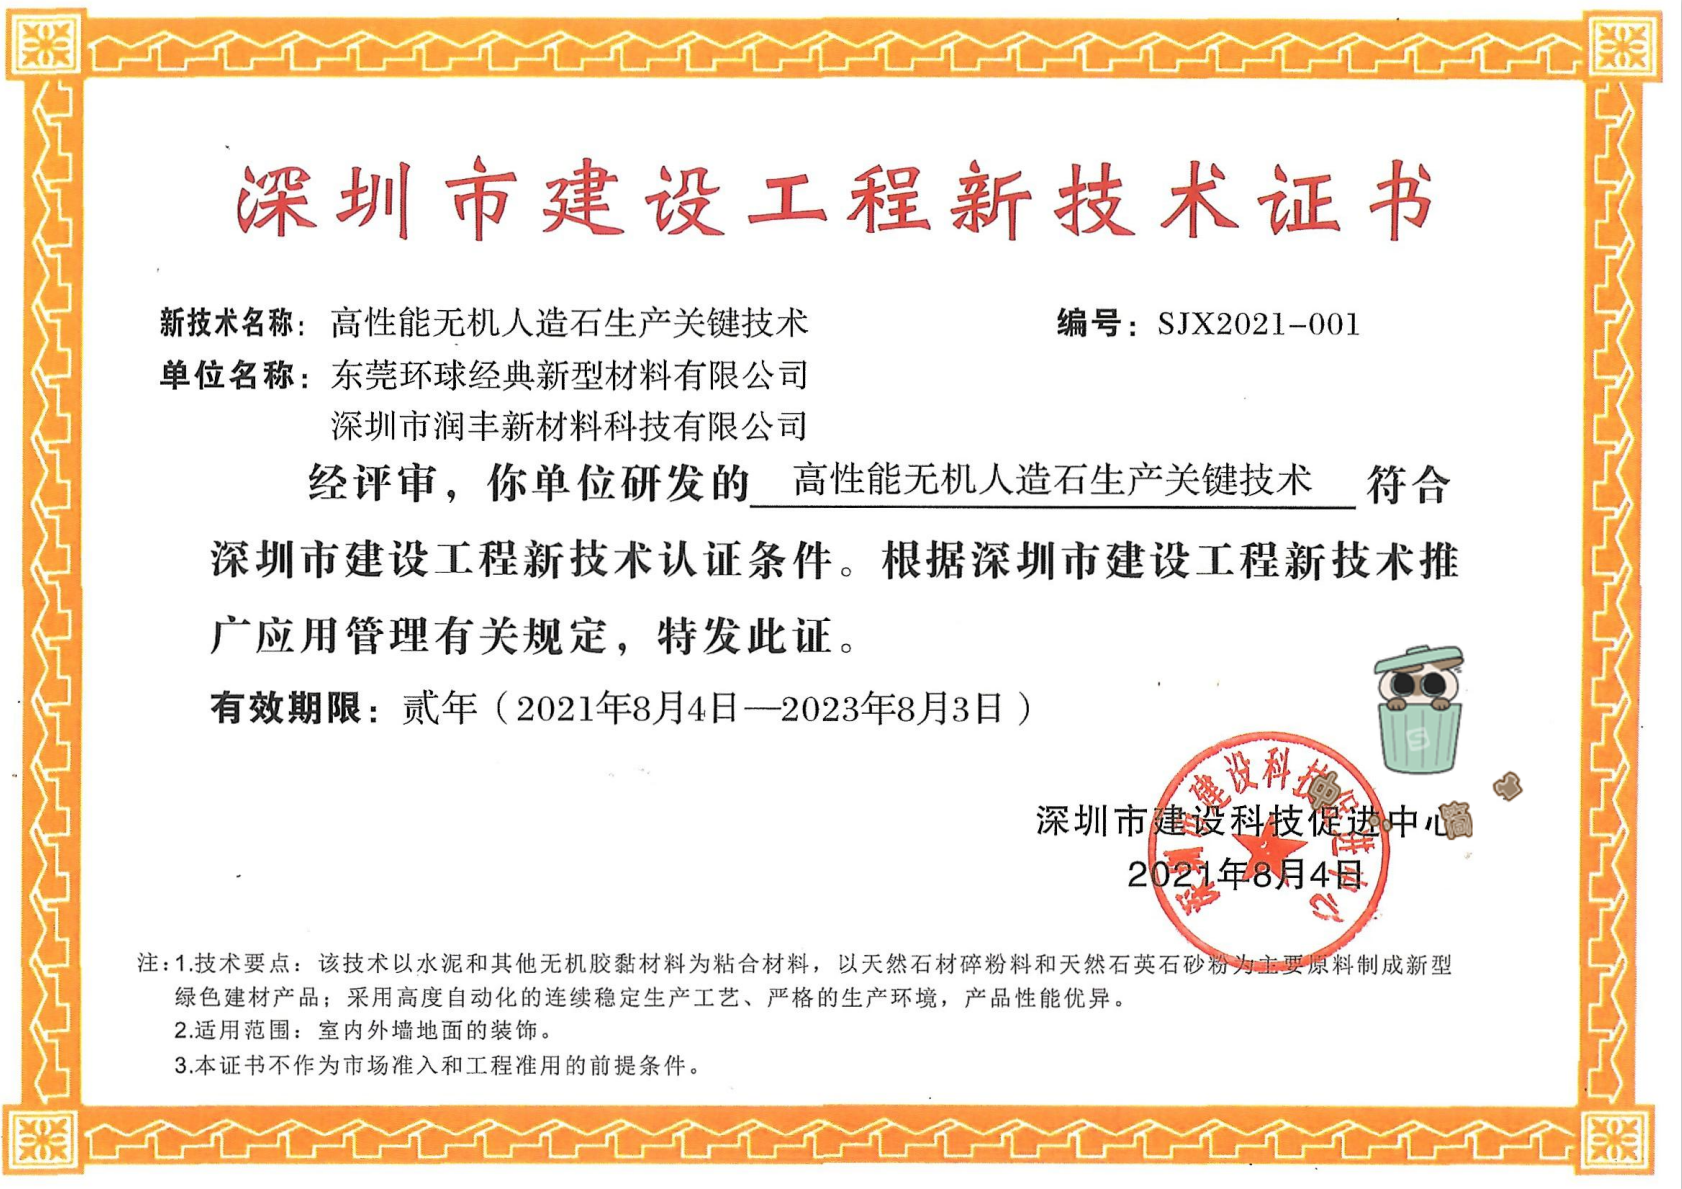 「高性能無機人造石生產關鍵技術」榮獲深圳市建設工程新技術認證.png